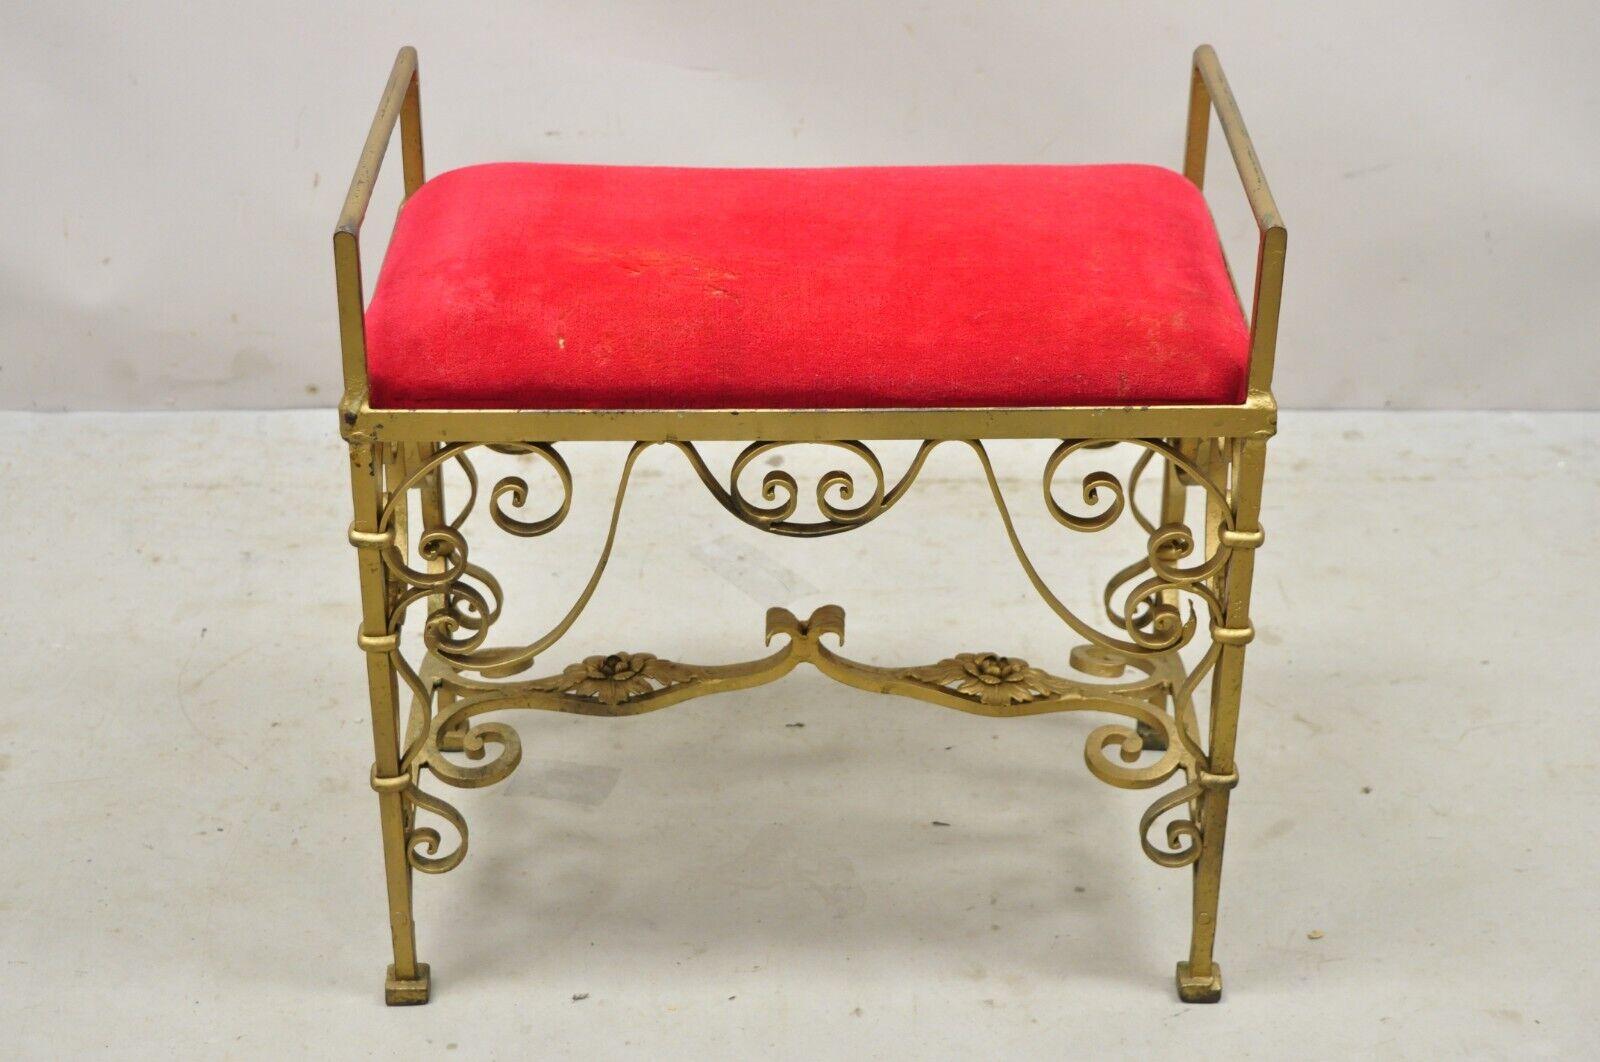 Vintage Gold Hollywood Regency Gothic Scrolling Iron Vanity Bench Seat Stool. Cet article se caractérise par une lourde armature en fer, une finition dorée vieillie, des volutes ornées, un siège rembourré rouge, un très bel article vintage, un